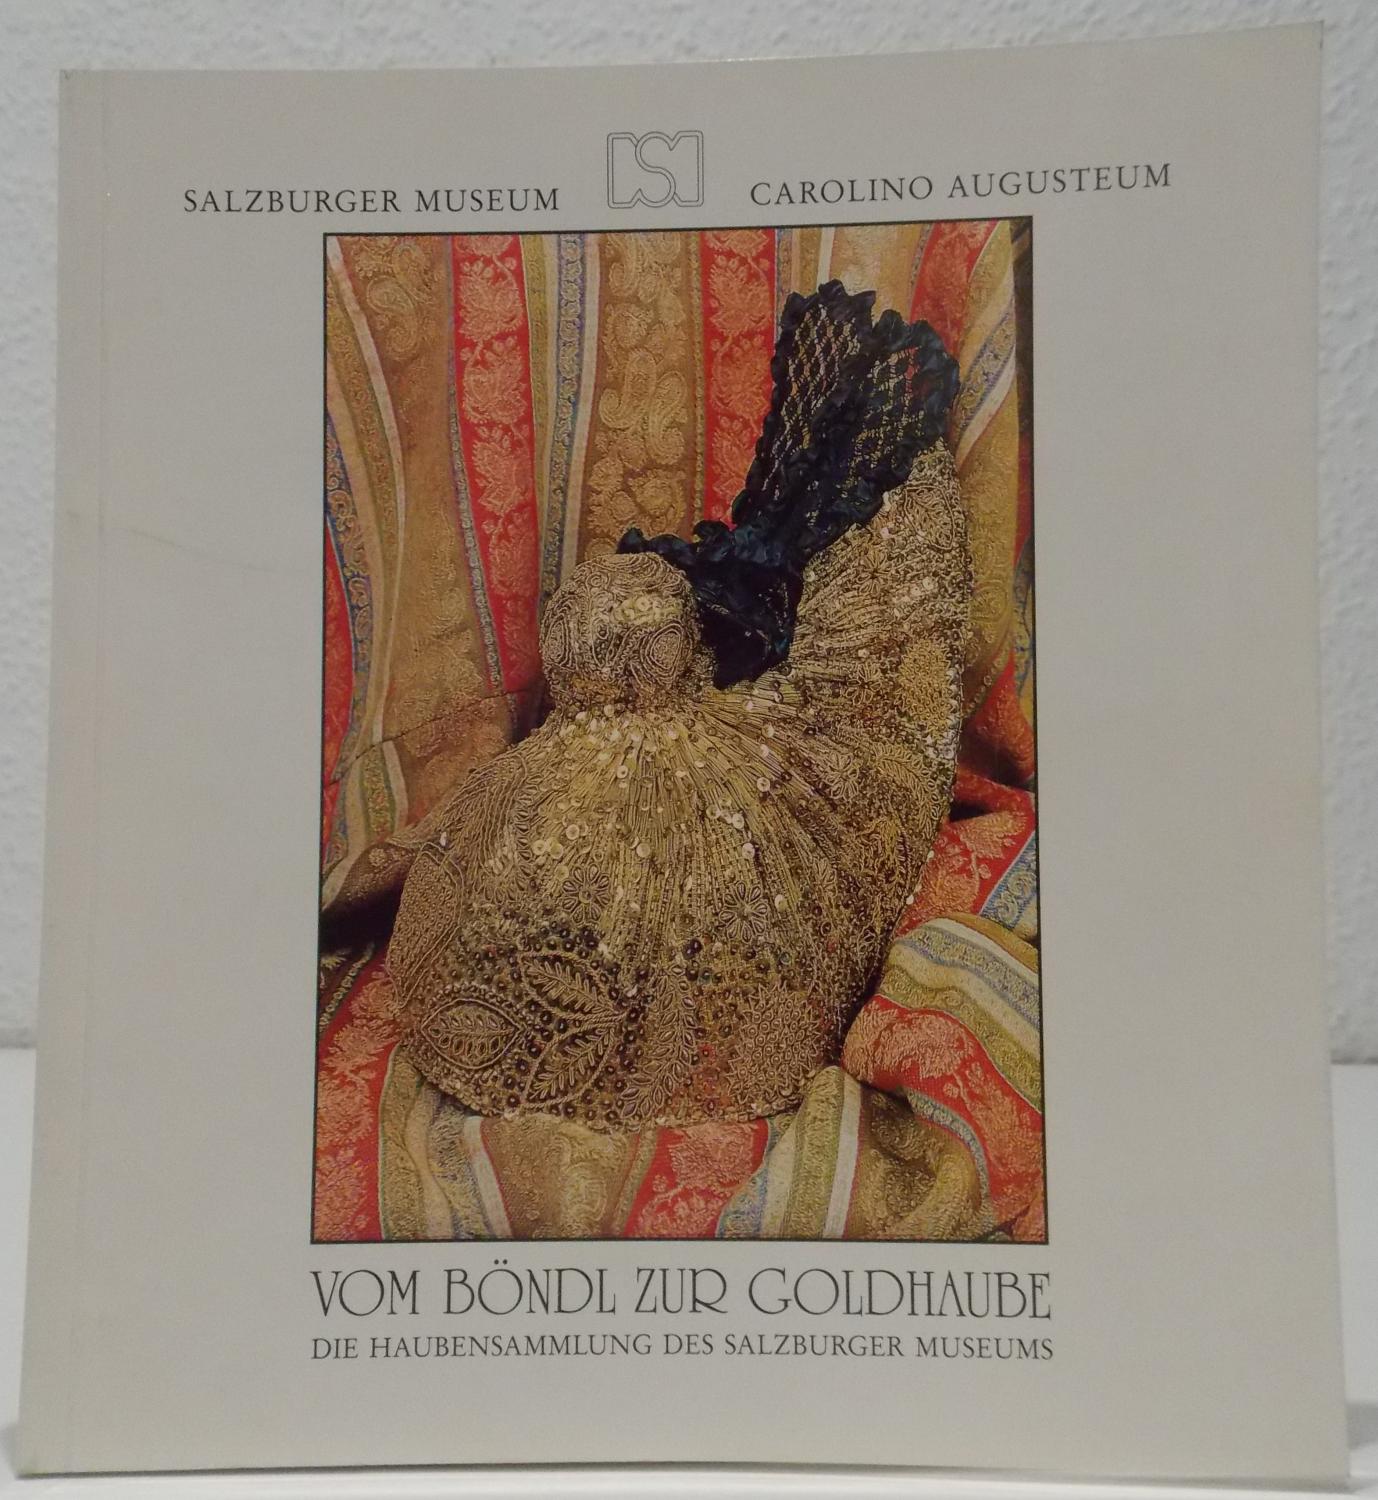 Vom Böndl zur Goldhaube - Die Haubensammlung des Salzburger Museums. (= Katalog zur 145.Sonderausstellung des Salzburger Museums Carolini Augusteum).